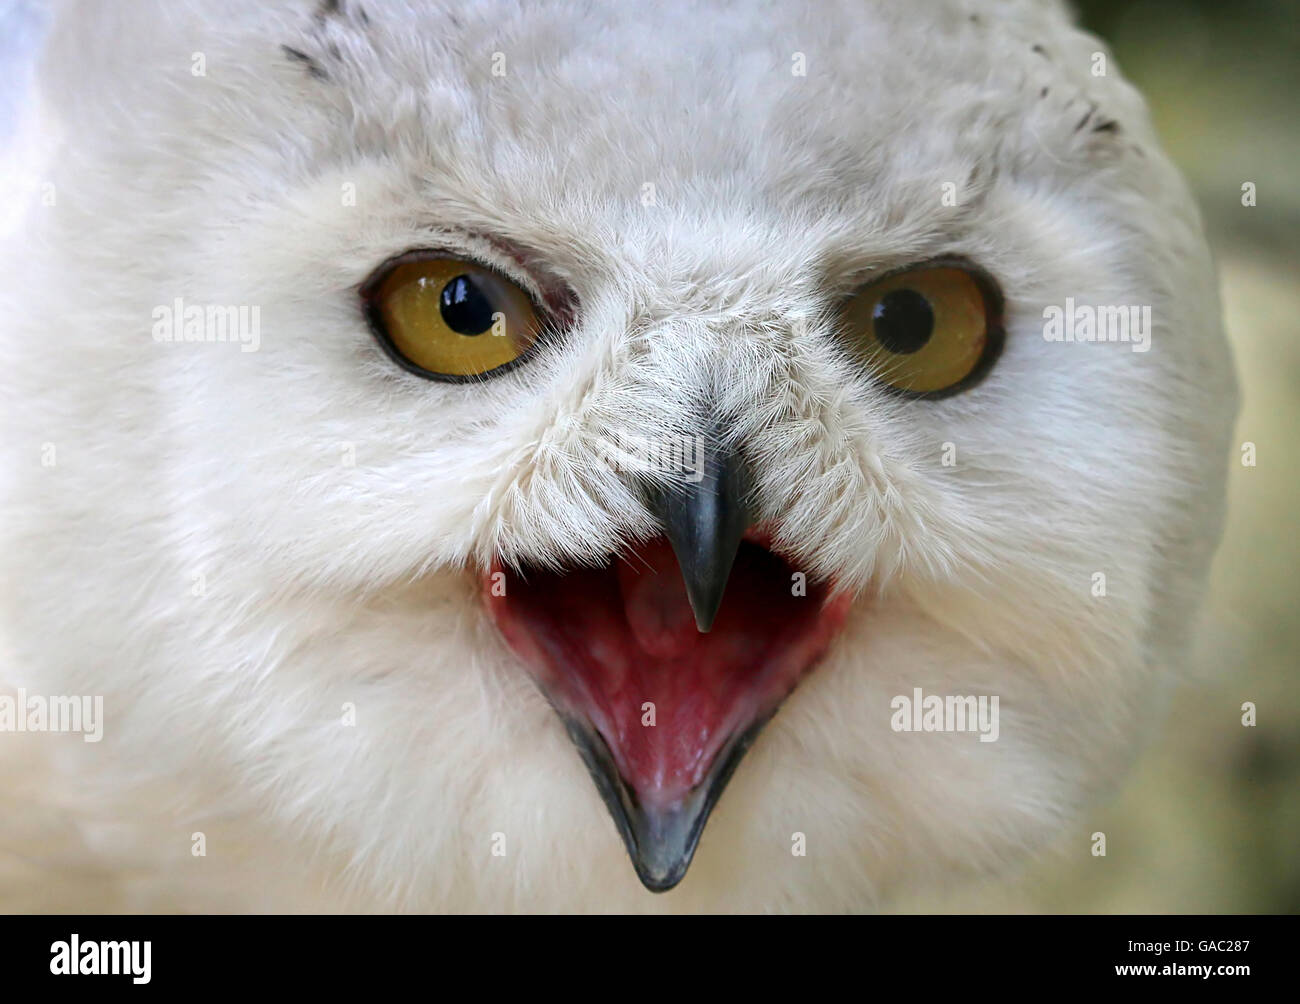 Feisty männlichen Schnee-Eule (Bubo Scandiacus) heftig Hupen. Nahaufnahme von Oberkörper und Kopf, gerichtete Kamera Stockfoto